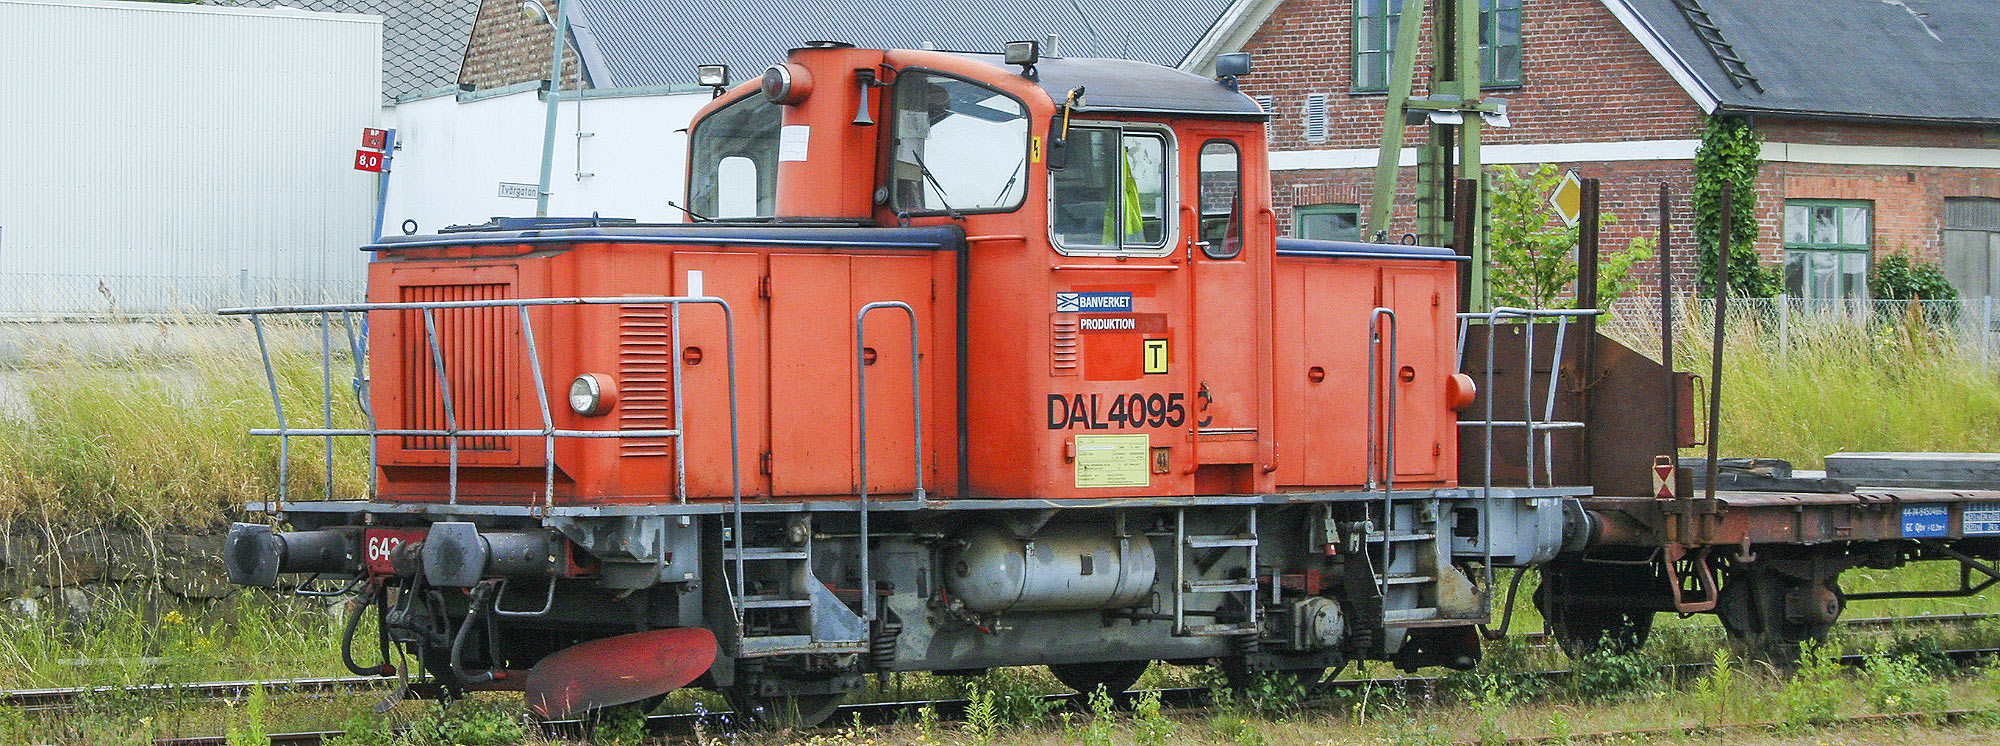 DAL 4095, f d Z67 642, i Åstorp 2008